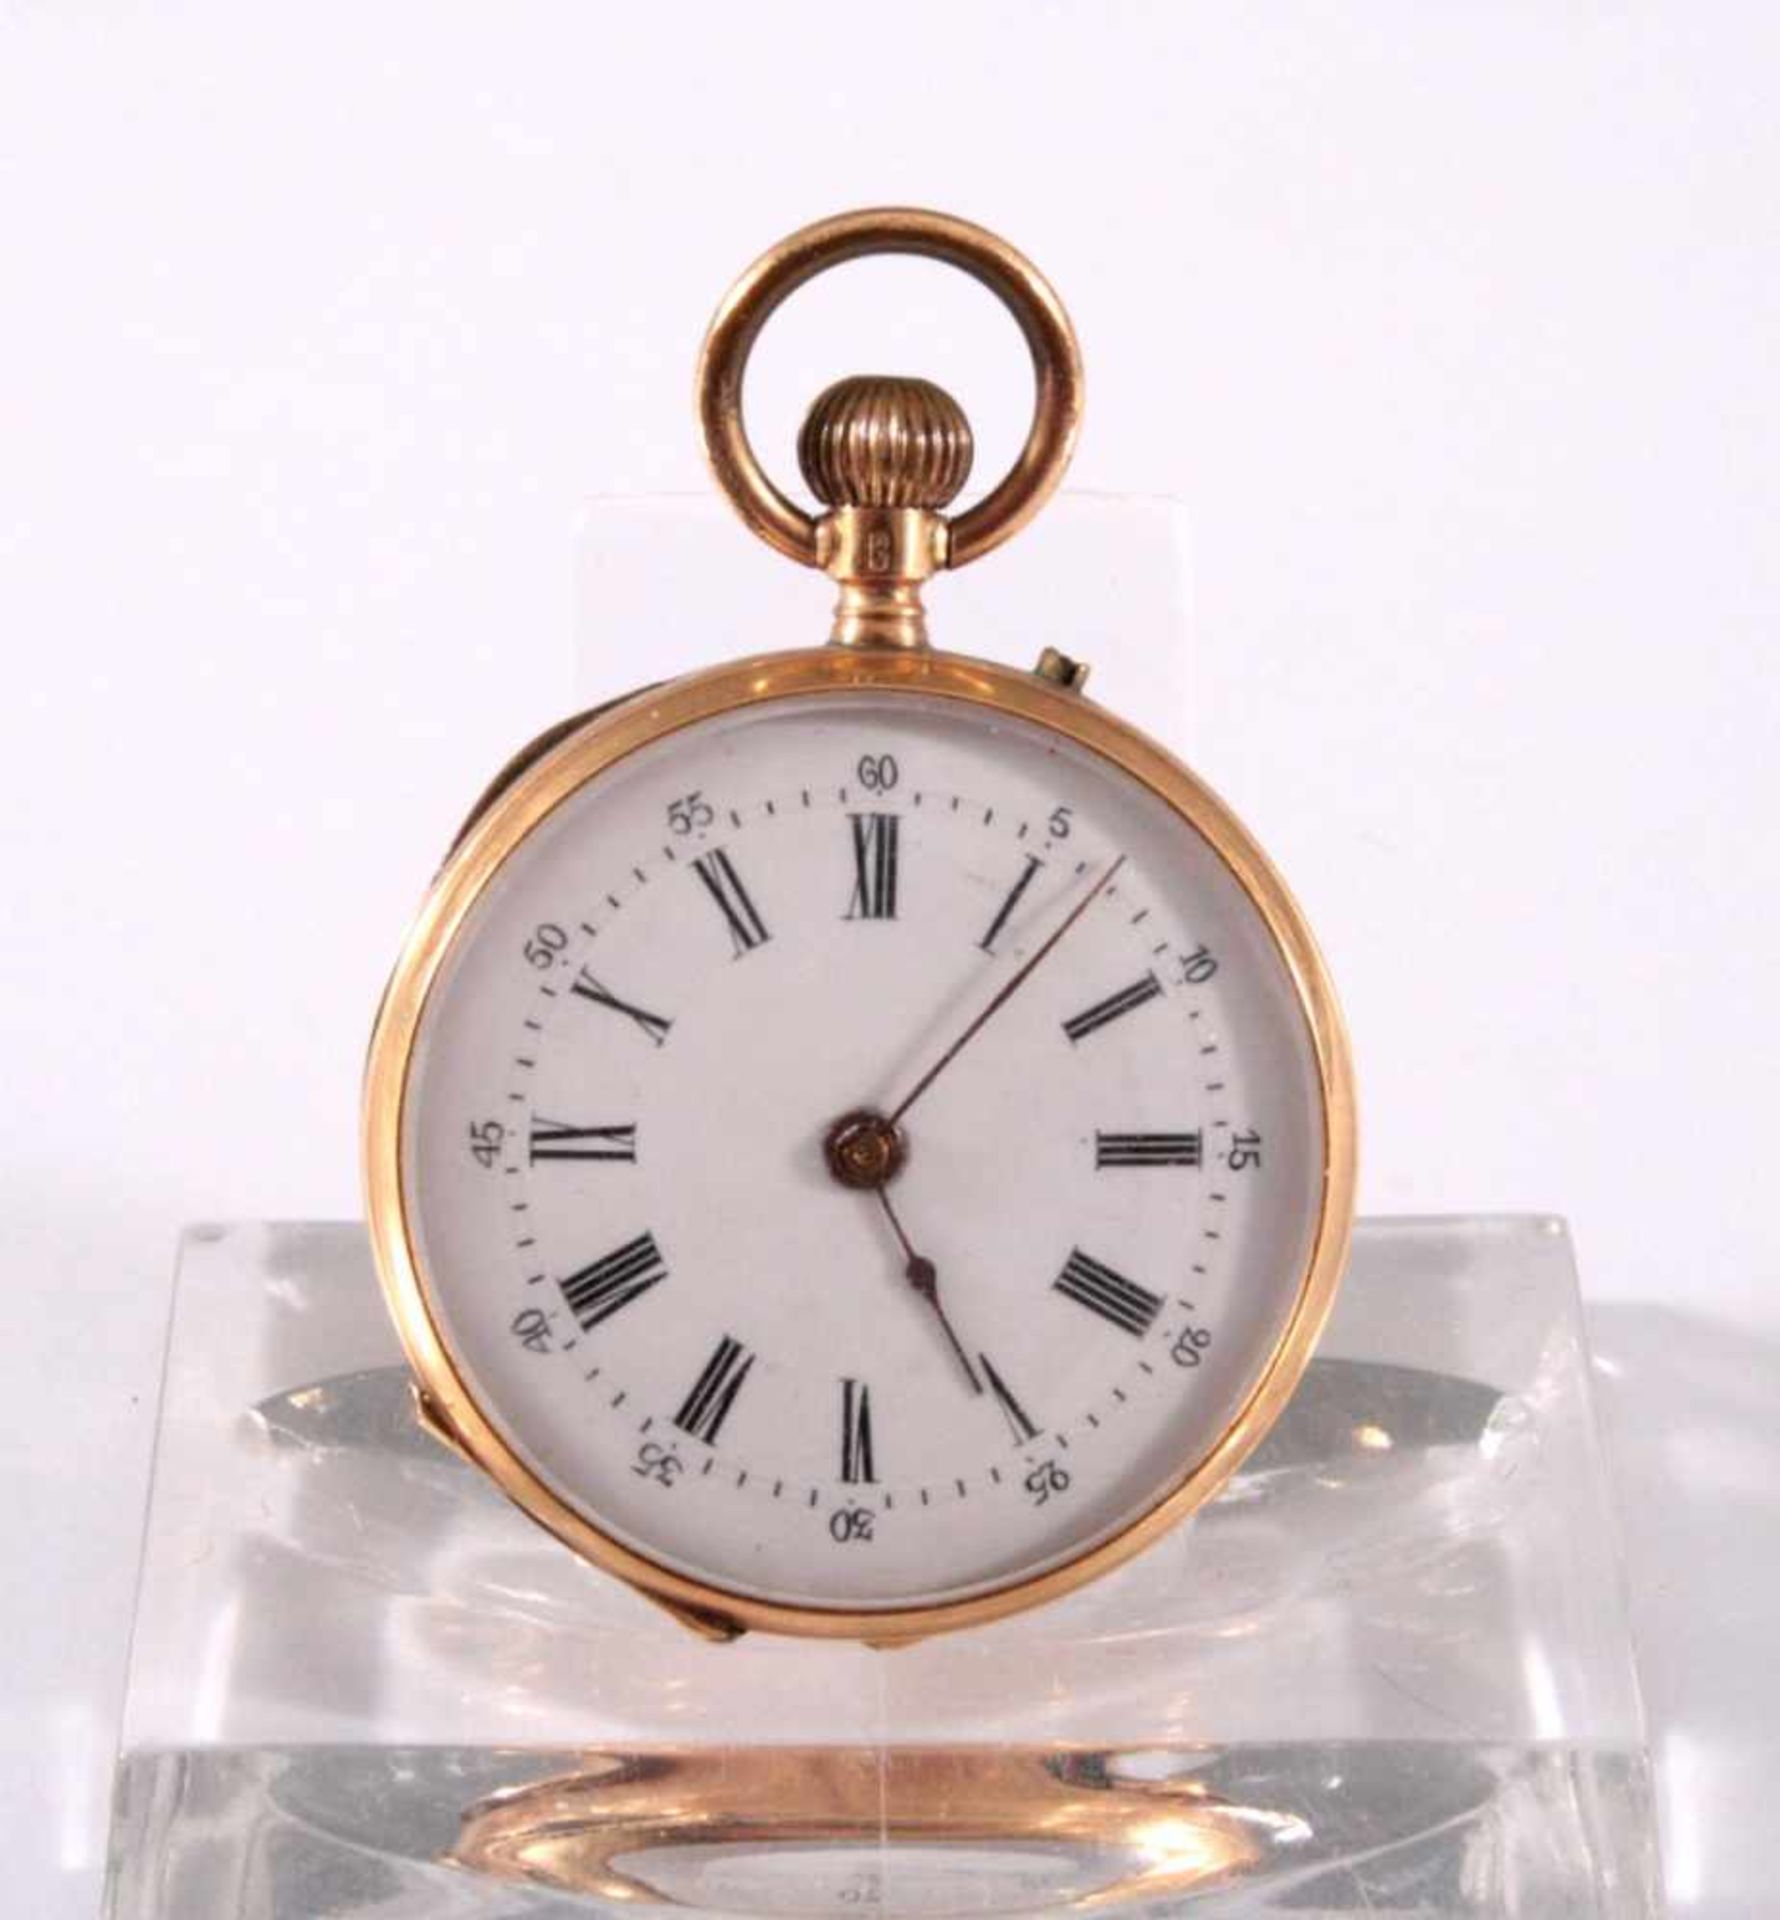 Offene Damentaschenuhr um 1900, 585/00 GGReich gravierter Uhrendeckel, innen nummeriert 30400/4,